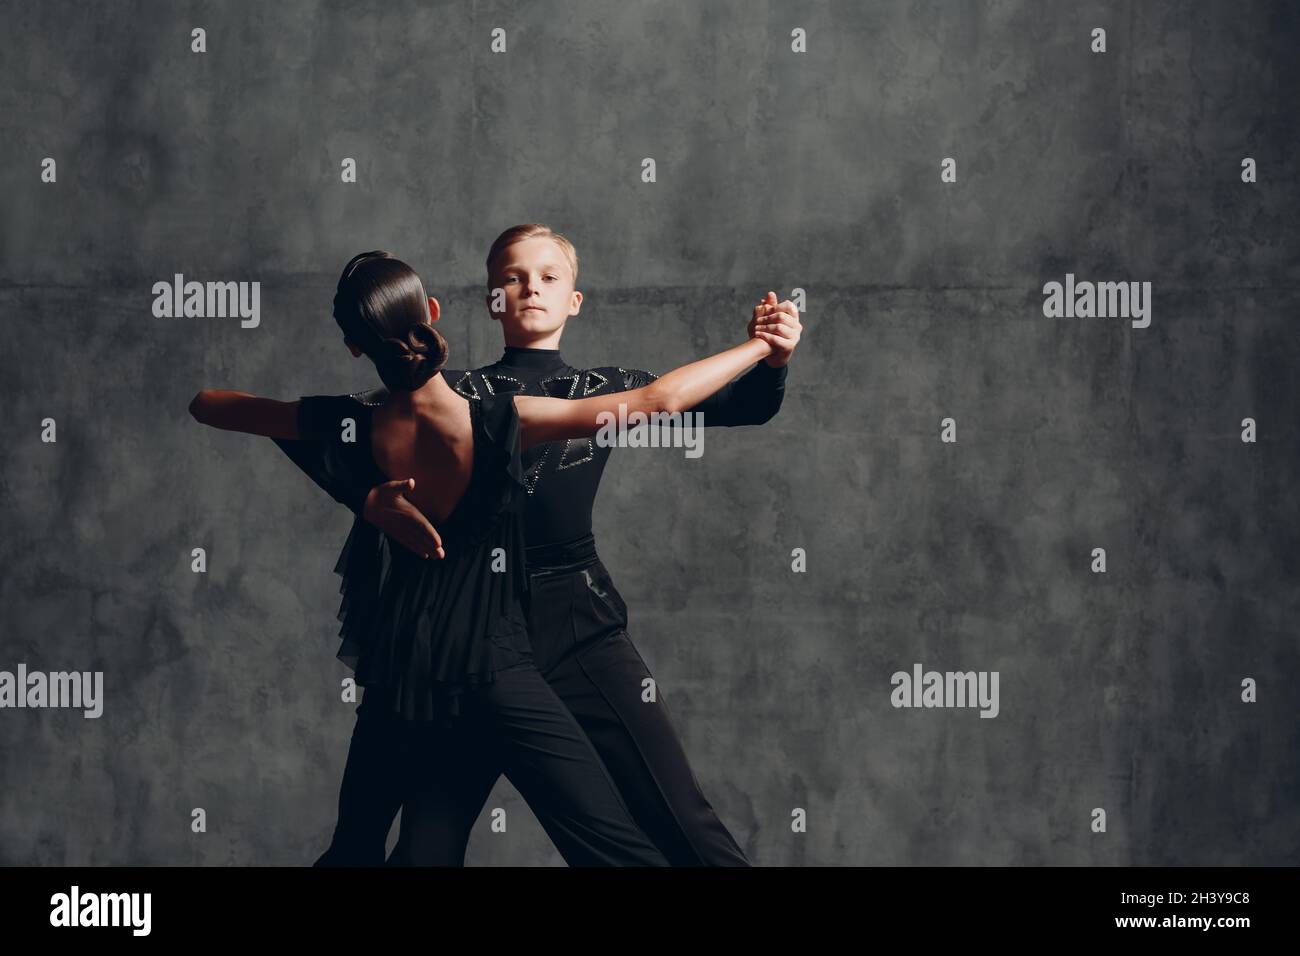 Deux danseurs de tango dansant en costume noir dans la salle de bal Banque D'Images